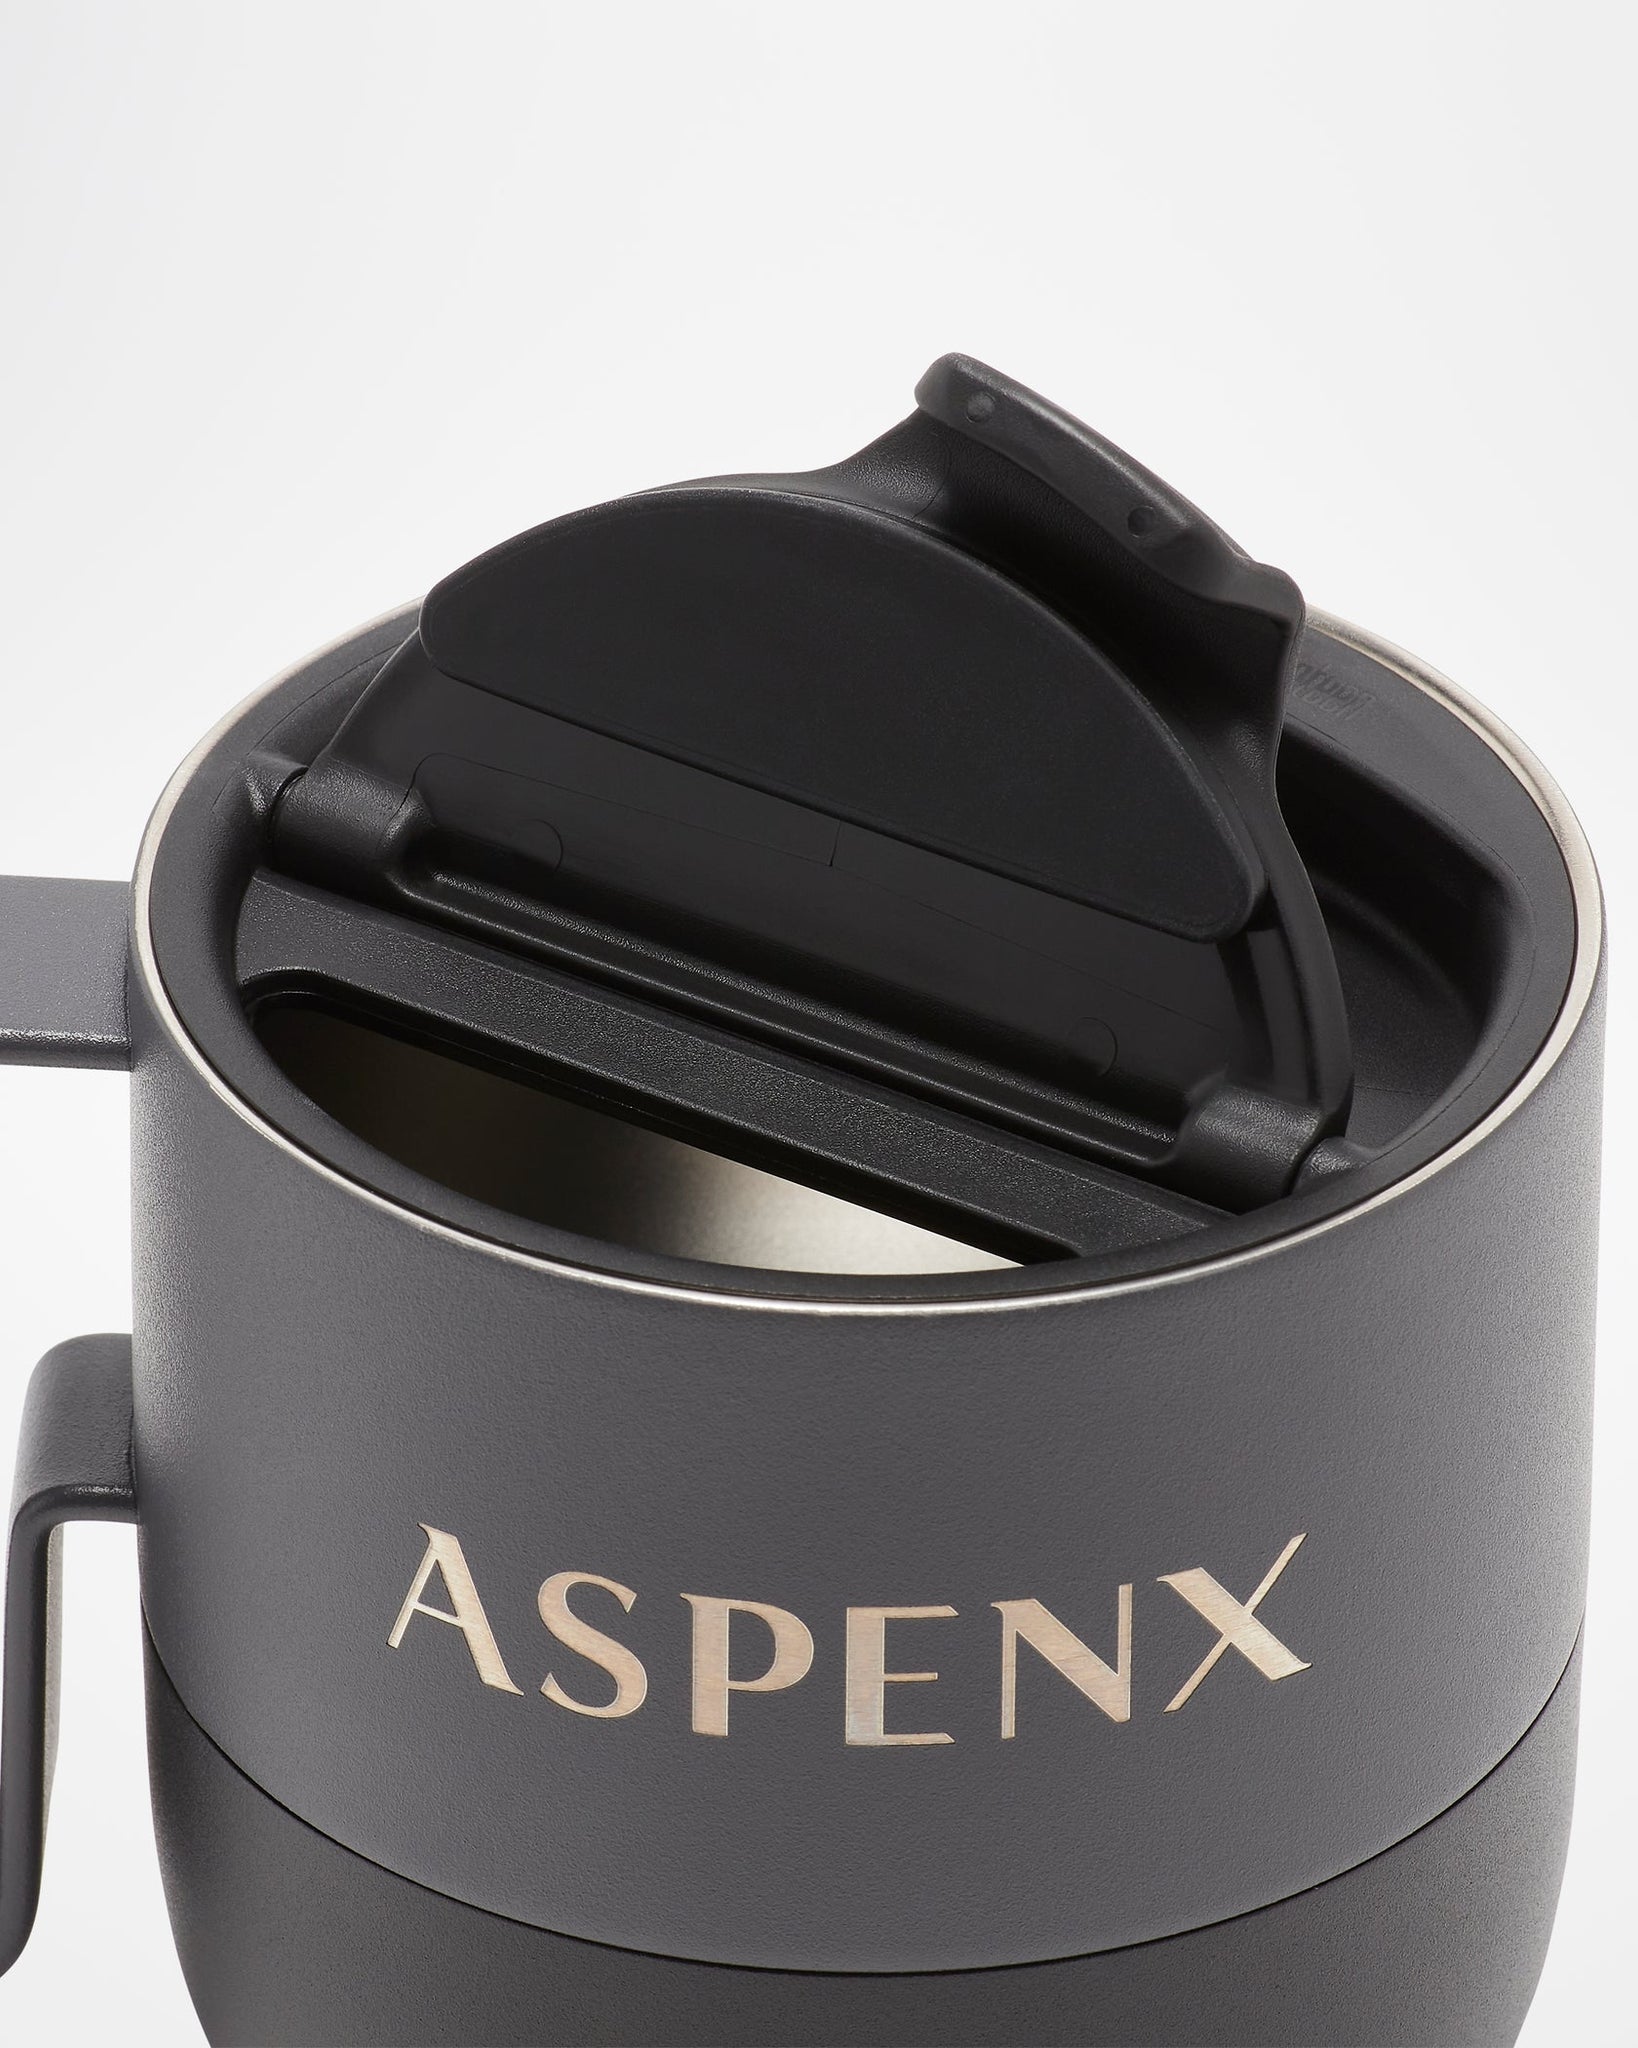 ASPENX 14oz Rise Mug